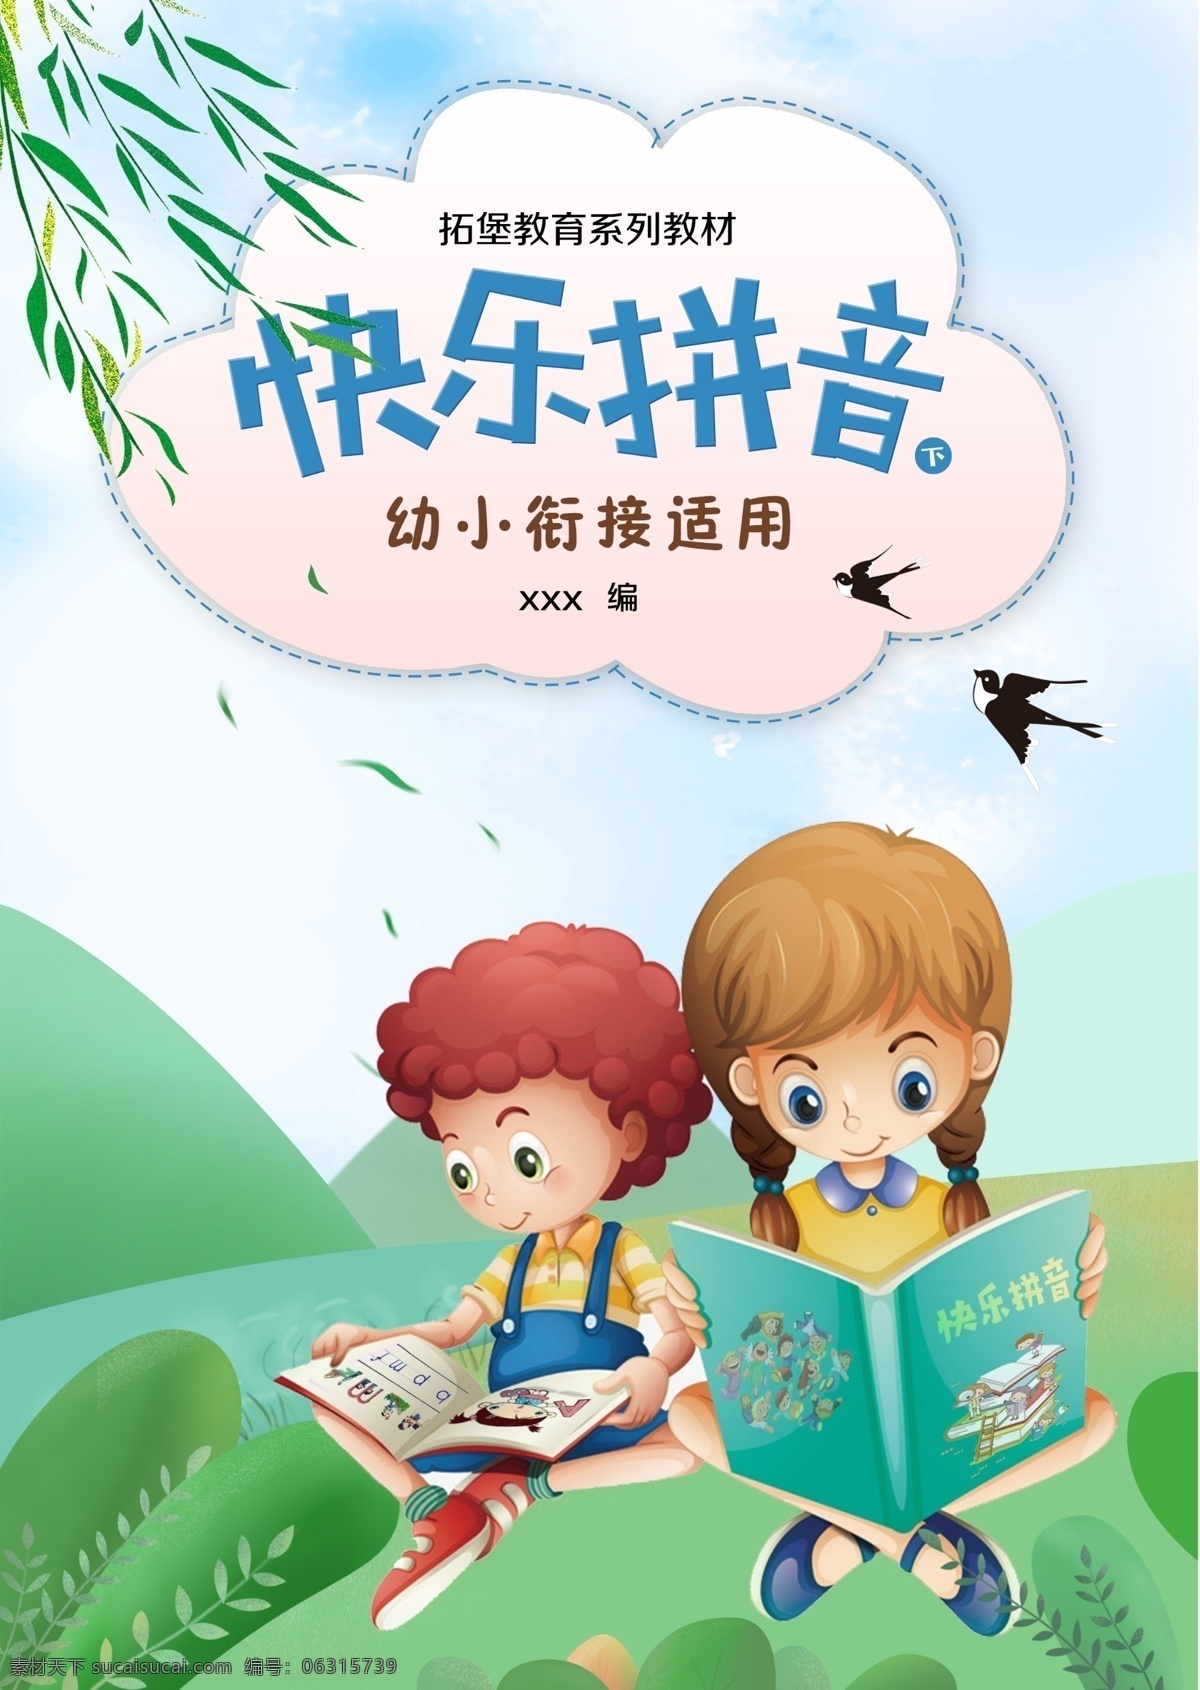 快乐 拼音 卡通 宣传海报 展板 幼儿拼音 拼音封面 封面 幼儿书籍 快乐拼音